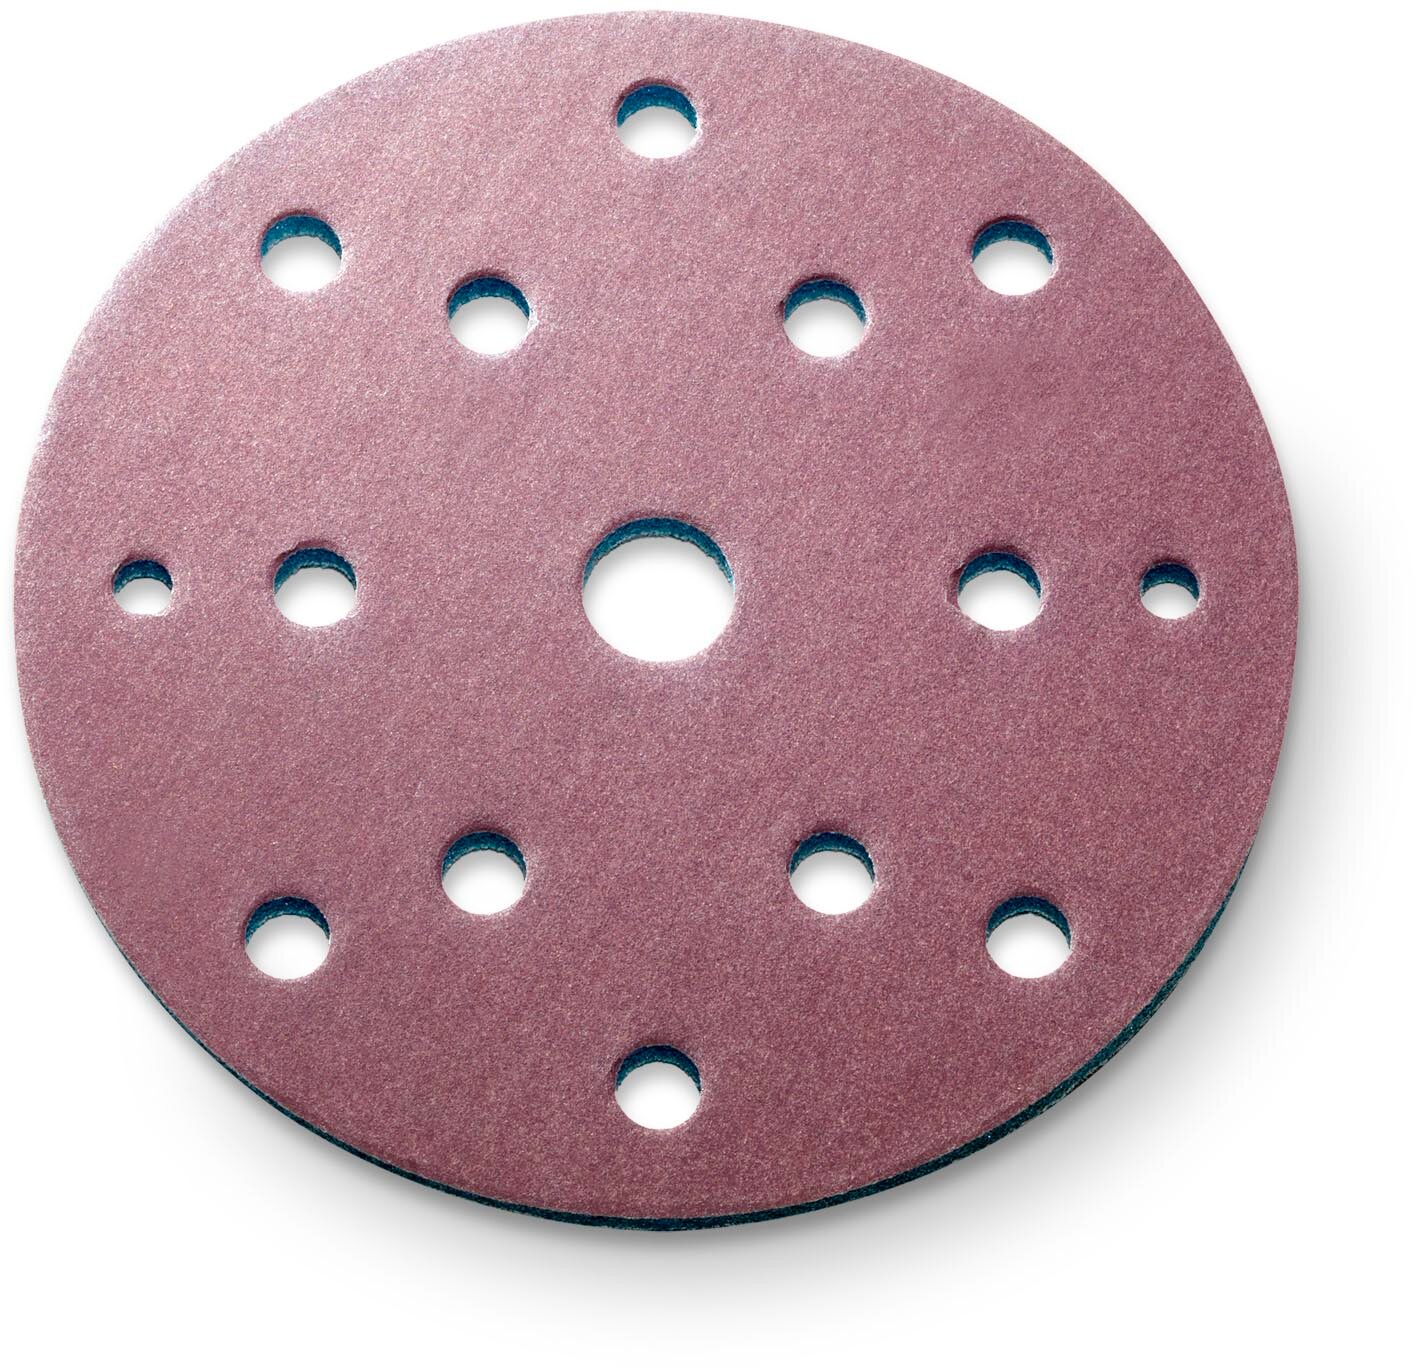 siaspeed disque abrasif Ø150mm 15 trous grain 180 (100 pièces)